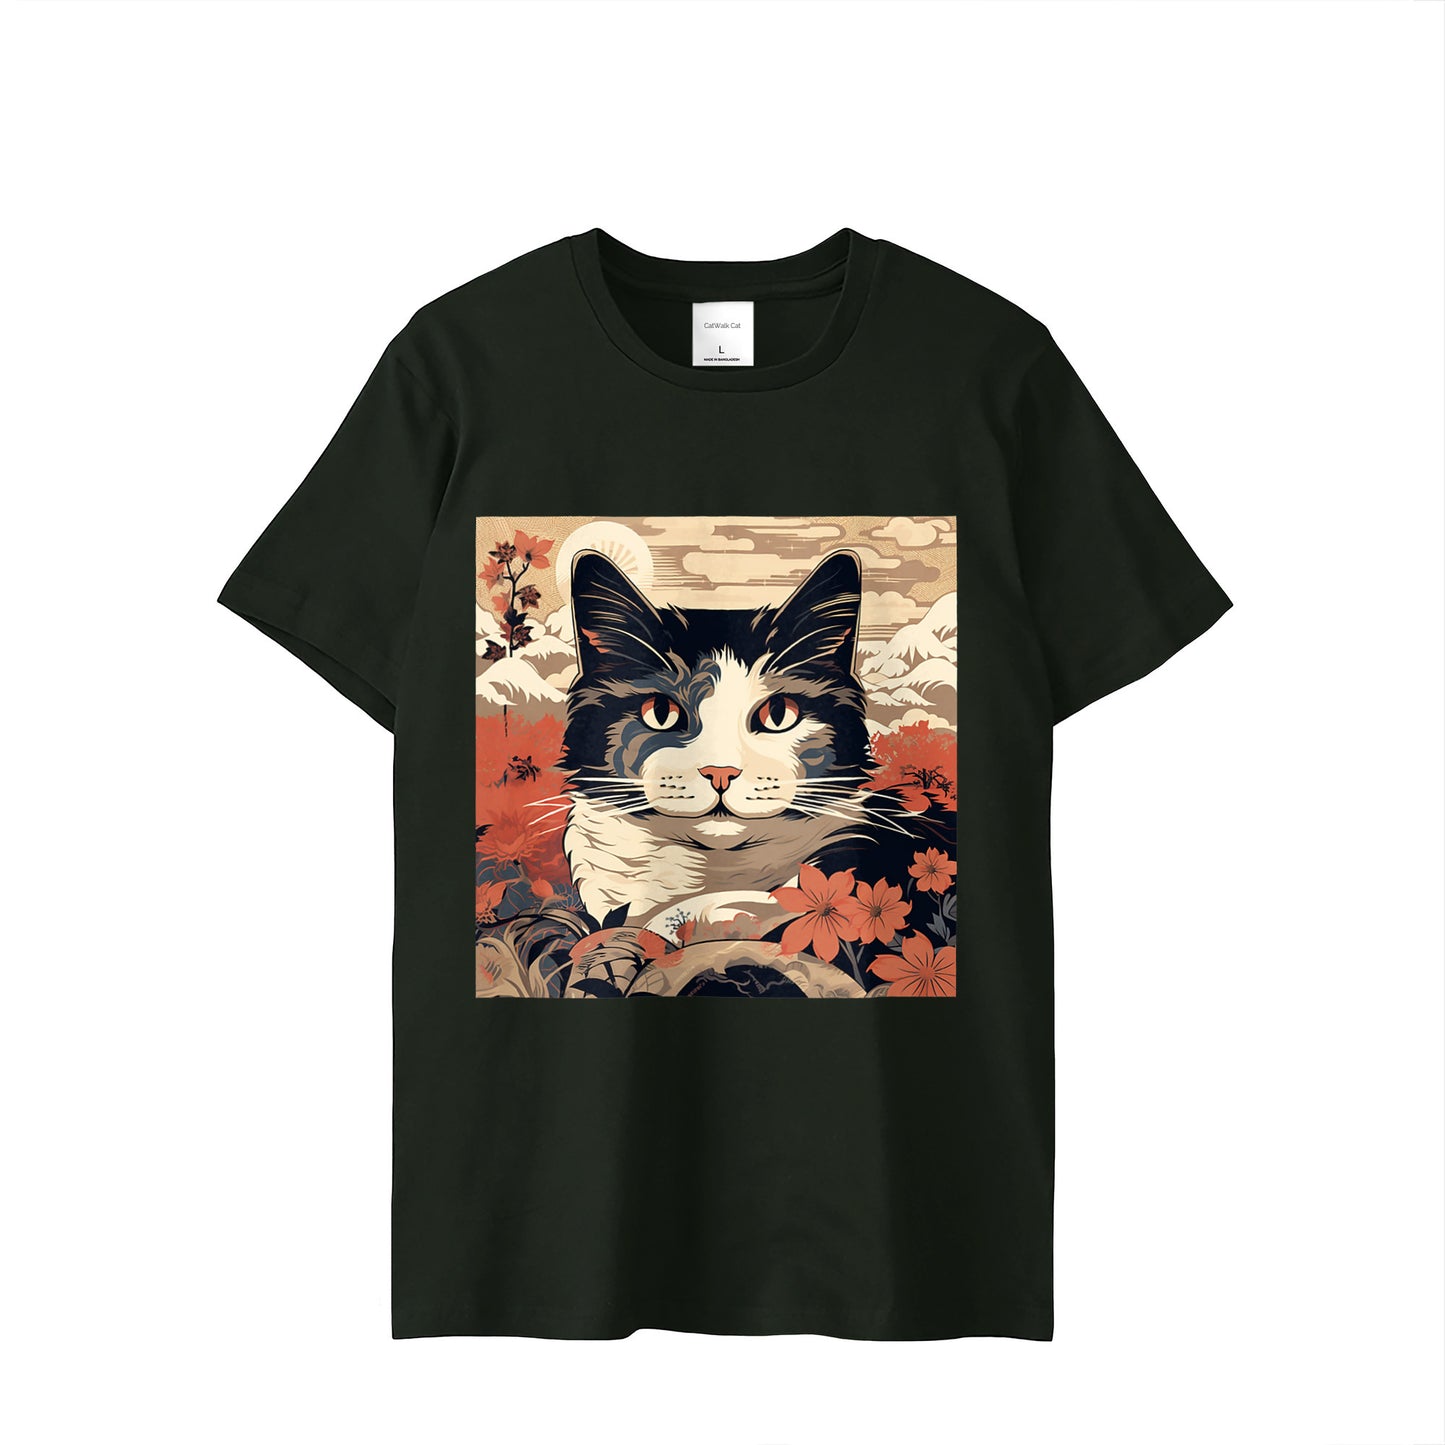 Ukiyo-e Cat #3 T-shirt